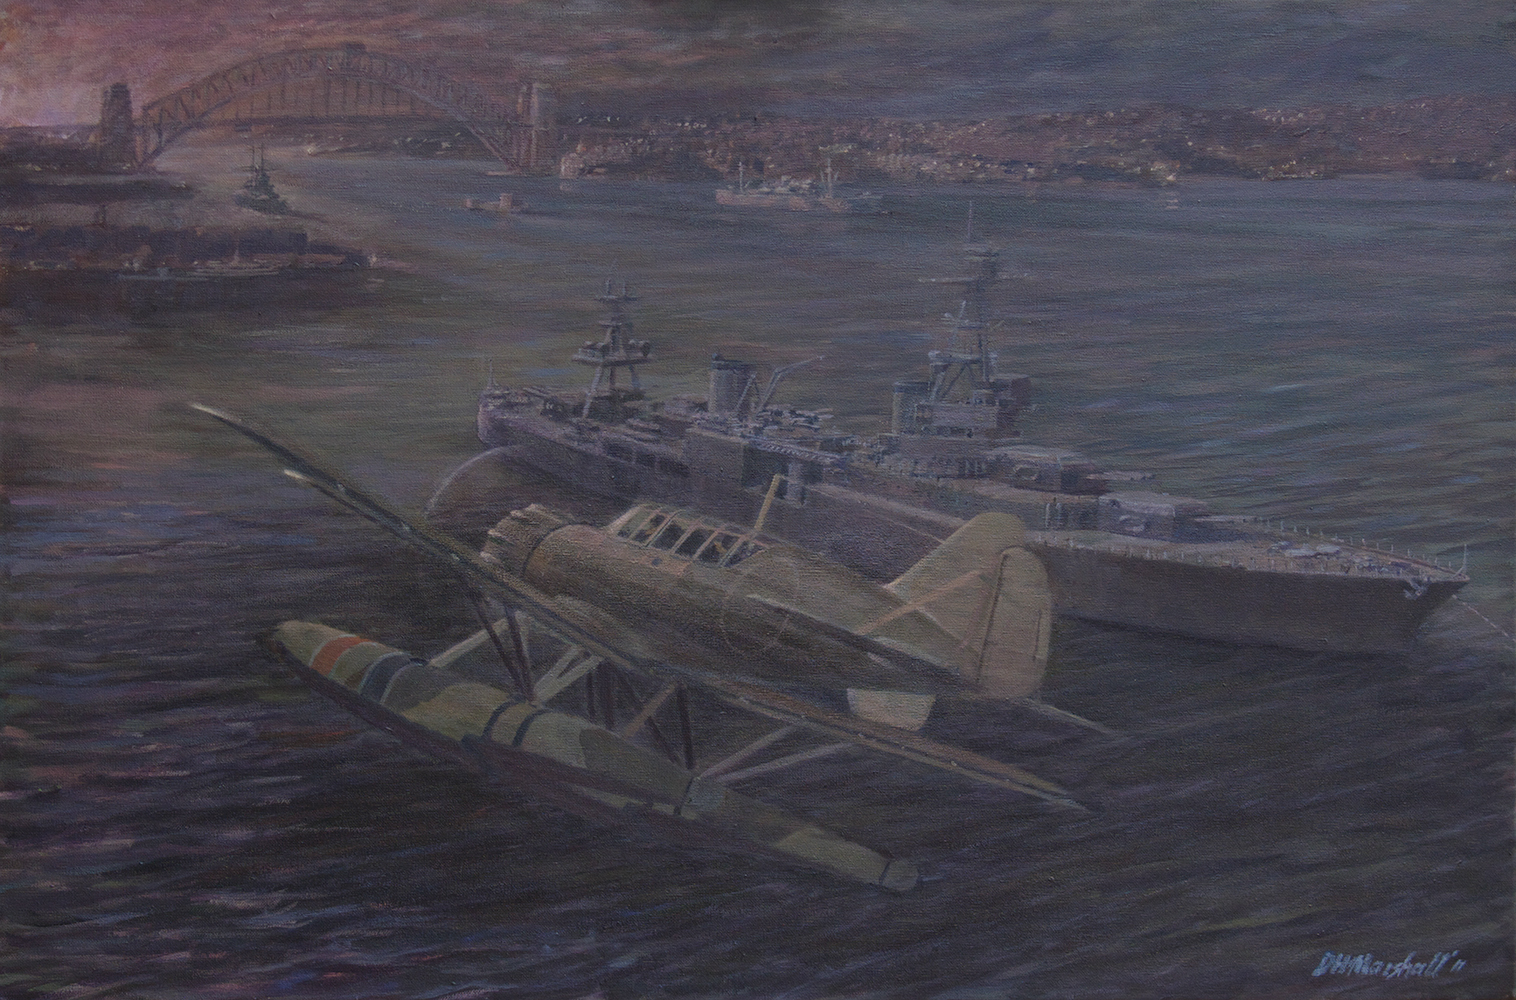 Night reconnaissance flight reveals USN Chicago Sydney, May 30th 1942